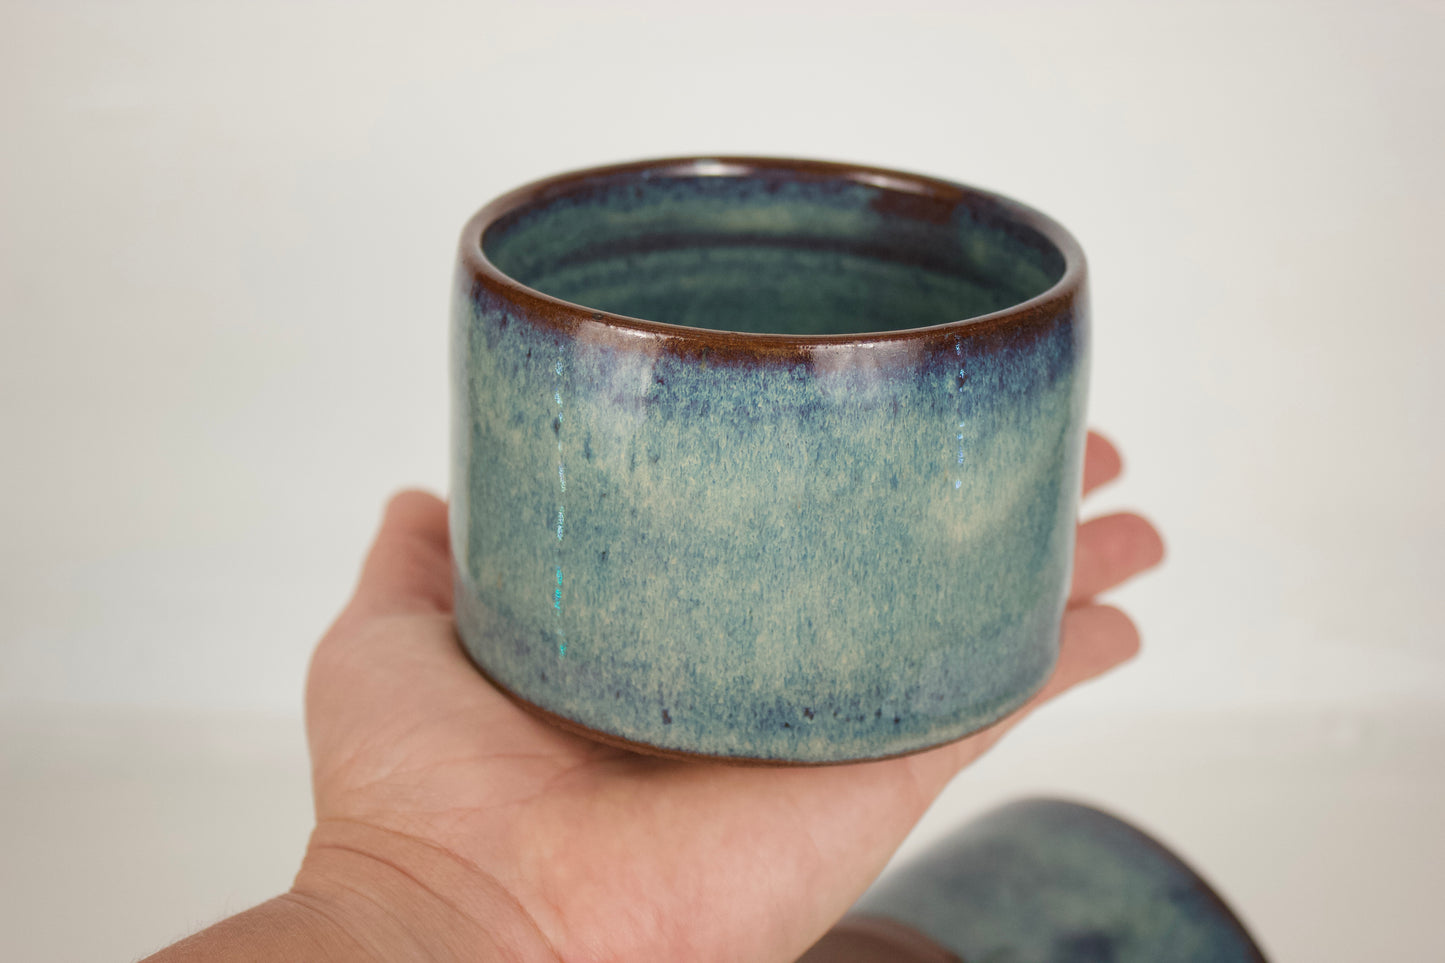 Handmade Ceramic Bowl Set - 3pcs